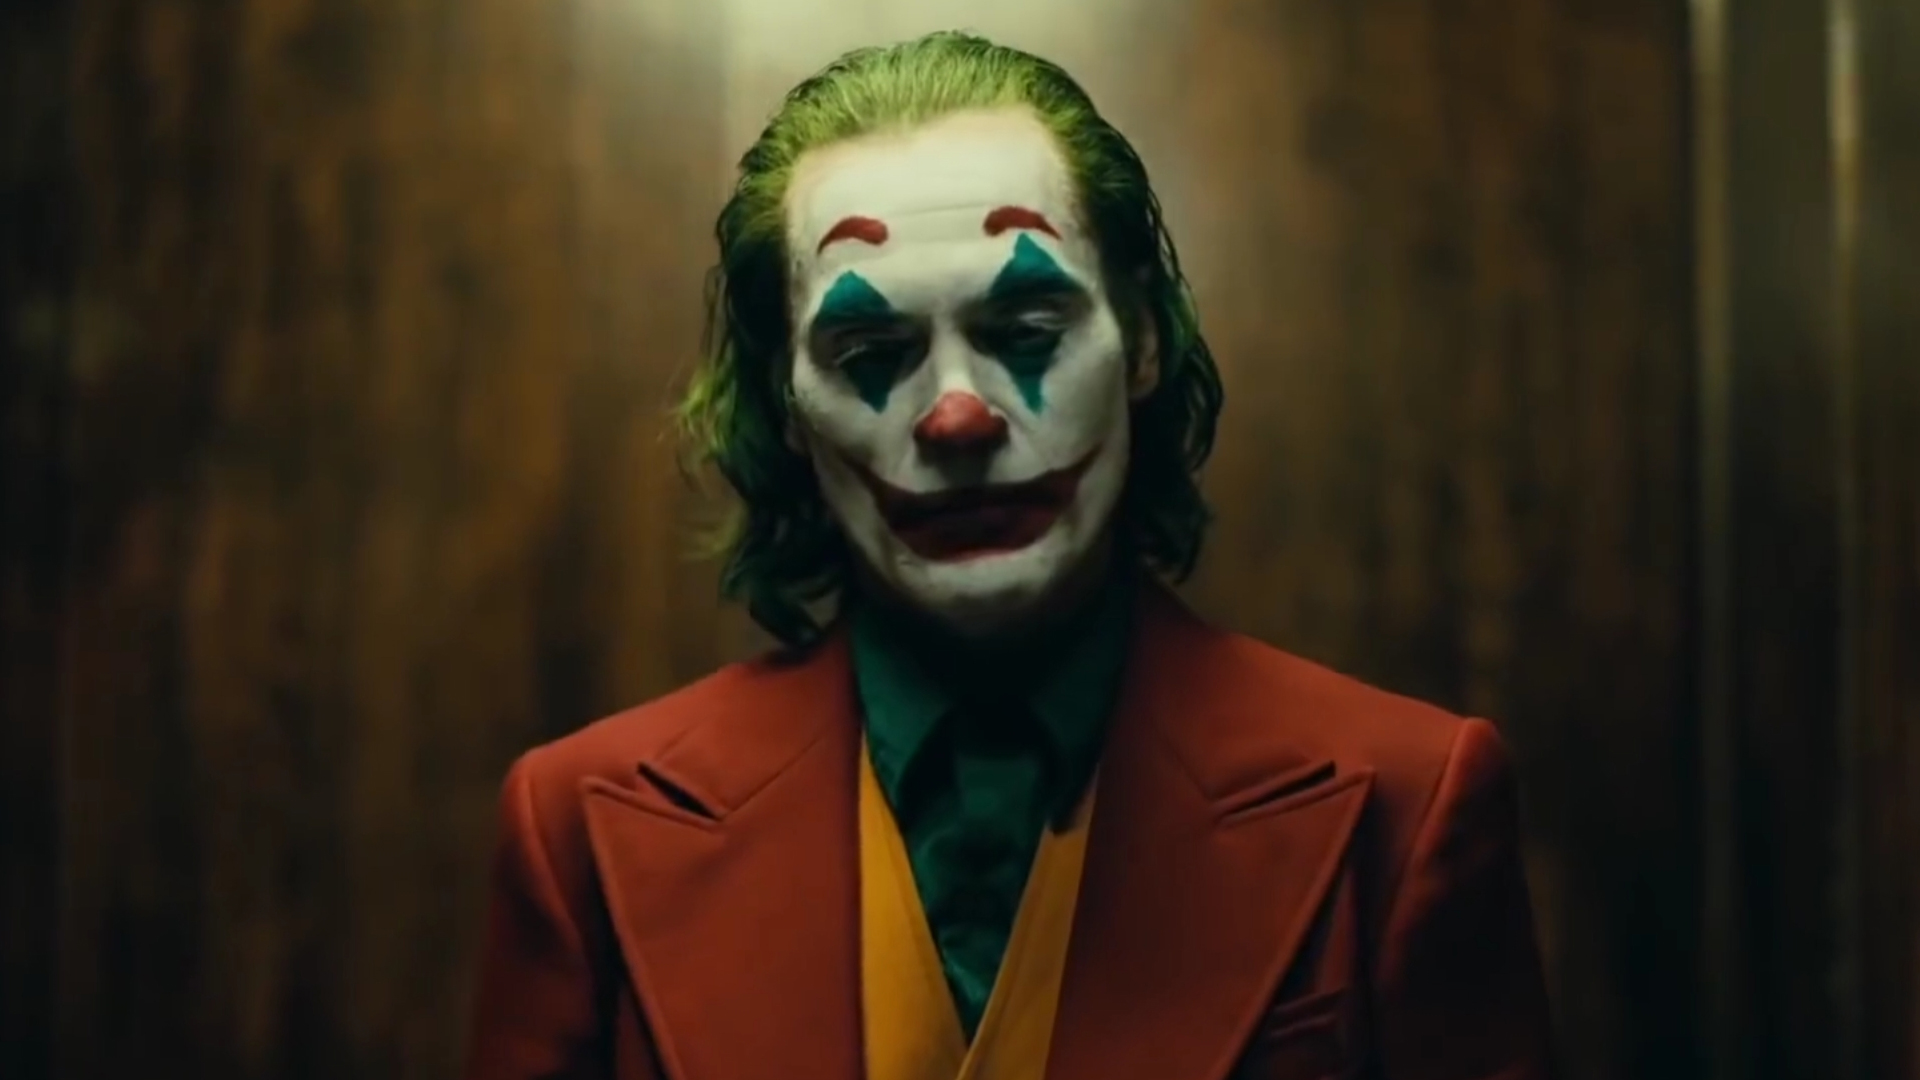 《小丑》重磅发布全球首款预告 “史上最伟大反派”邪魅登场
		
	
    
        Joker